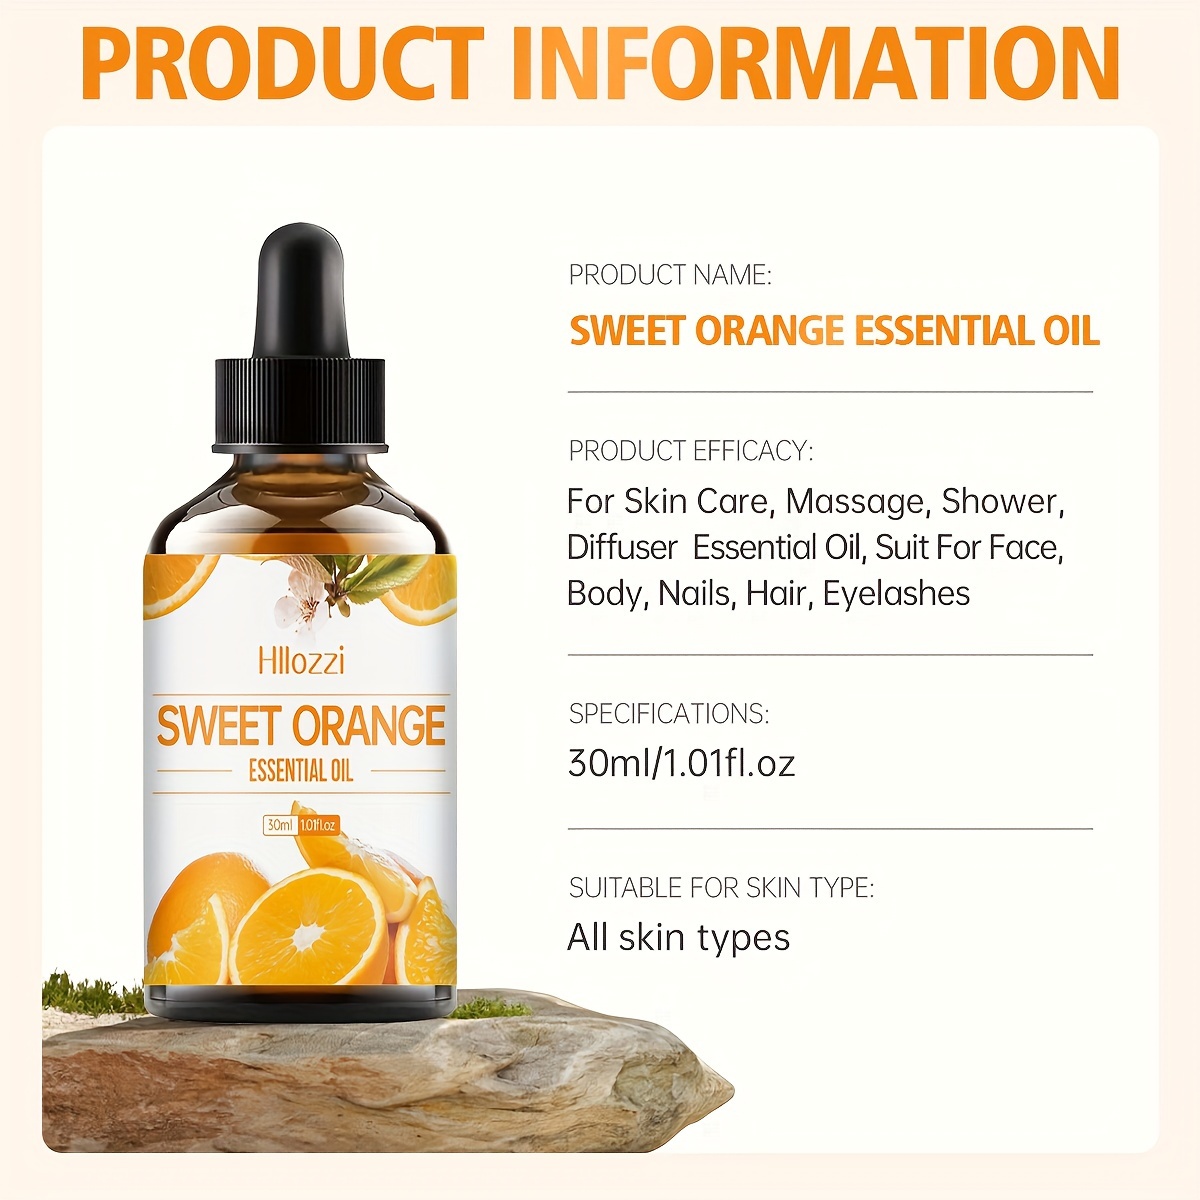 Aceite Esencial de Naranja Dulce